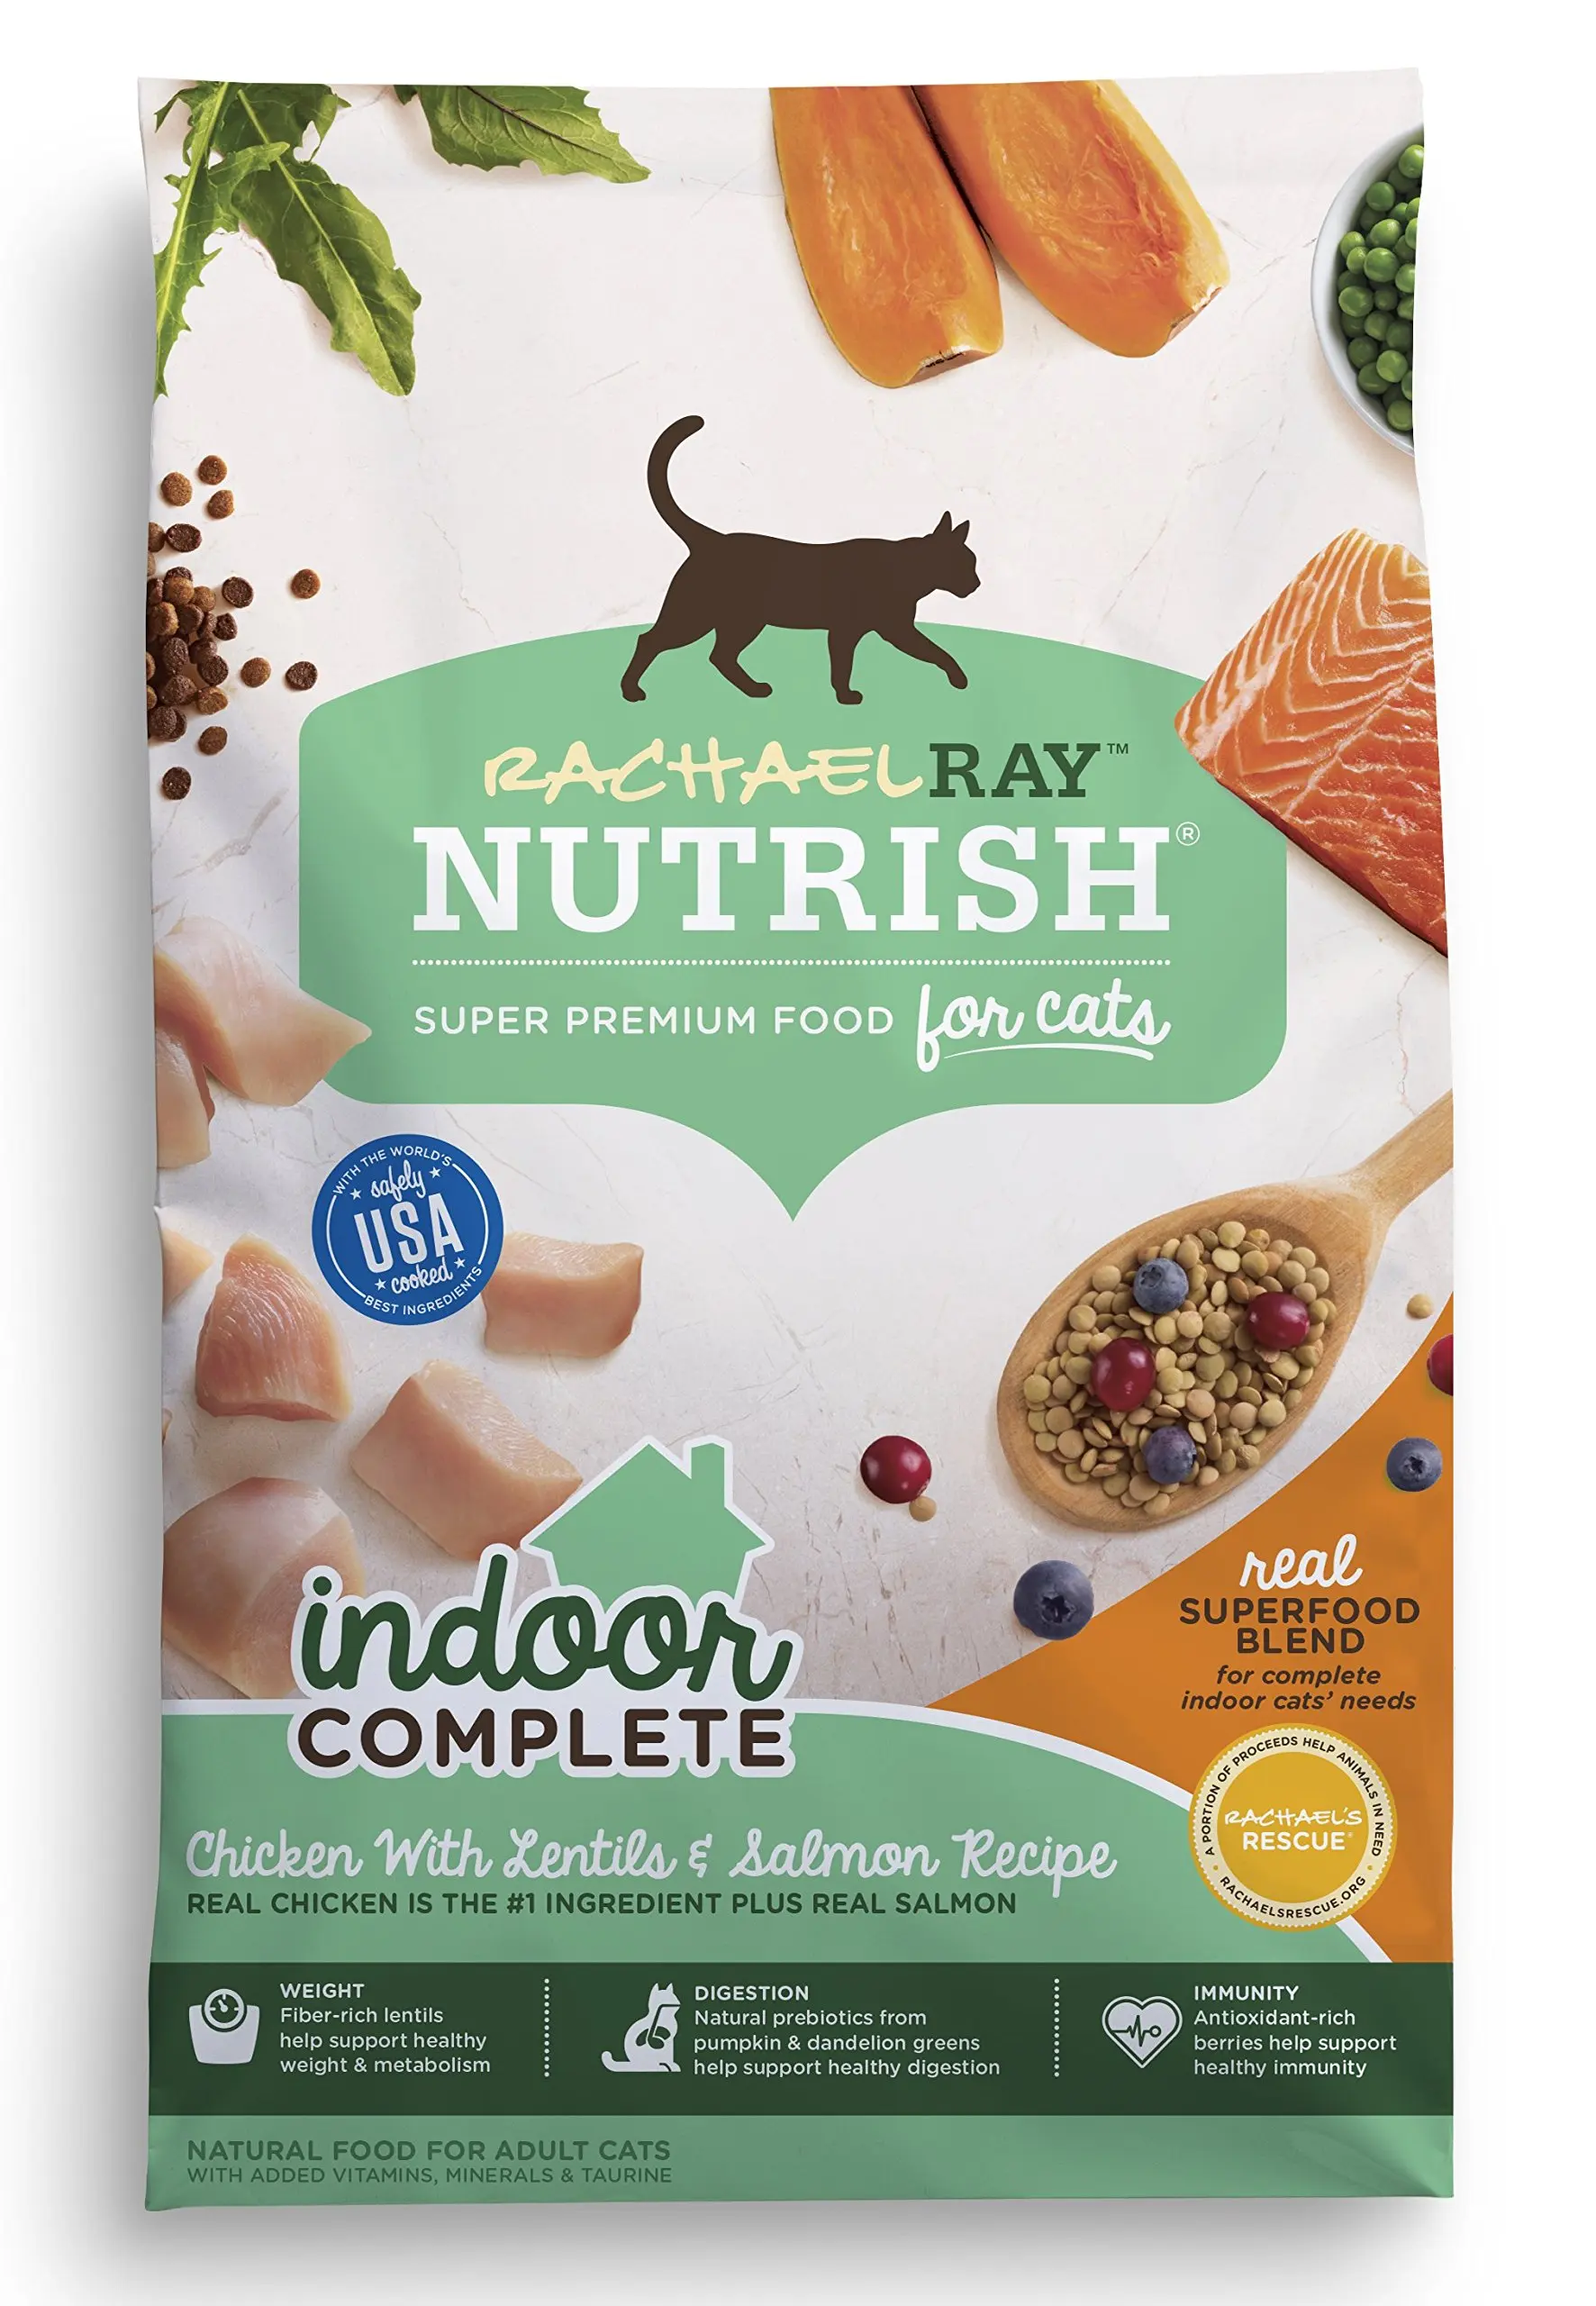 Complete with natural senior. Super Premium Dry food for Cats. Nutrish детское питание. Кошачий корм favourites Premium complete food. Nutrish Нидерландия.